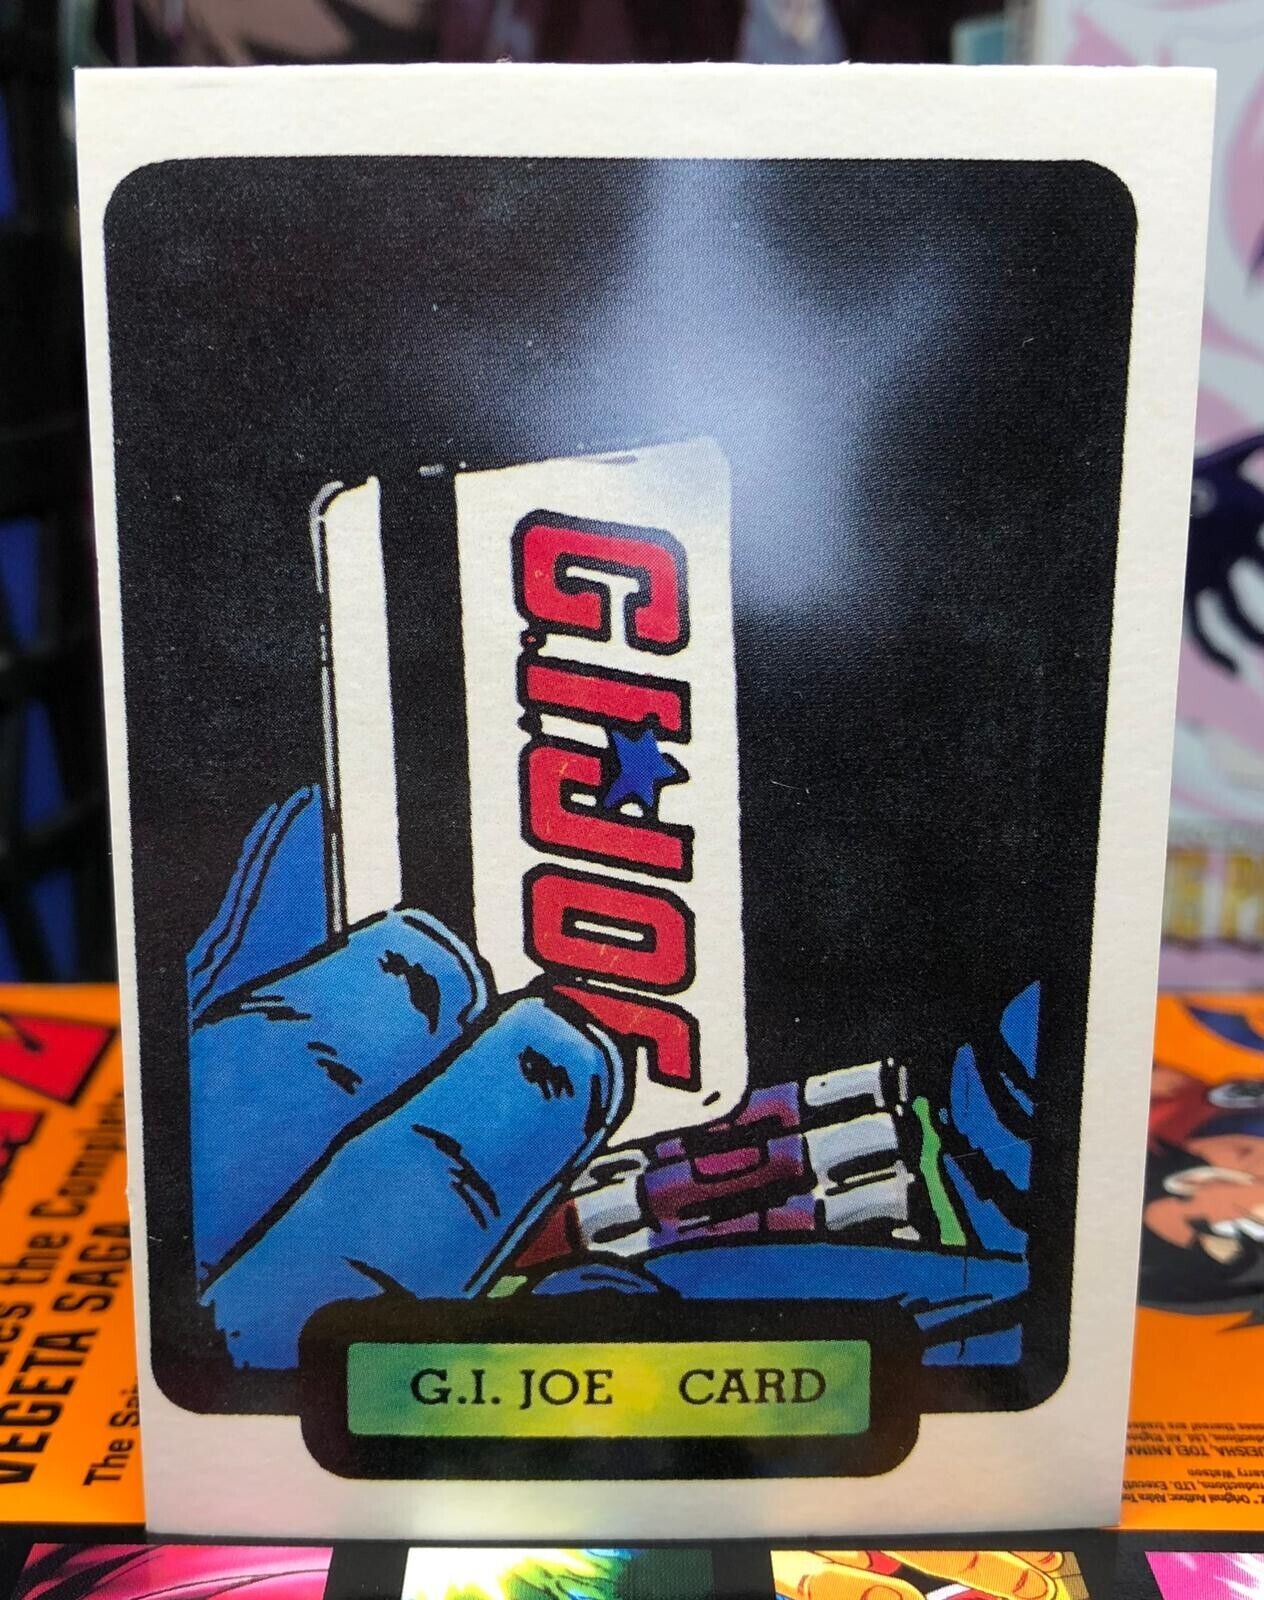 G.I. Joe Card 1987 G.I. Joe Comic Card #50 (GI JOE A Real American Hero)